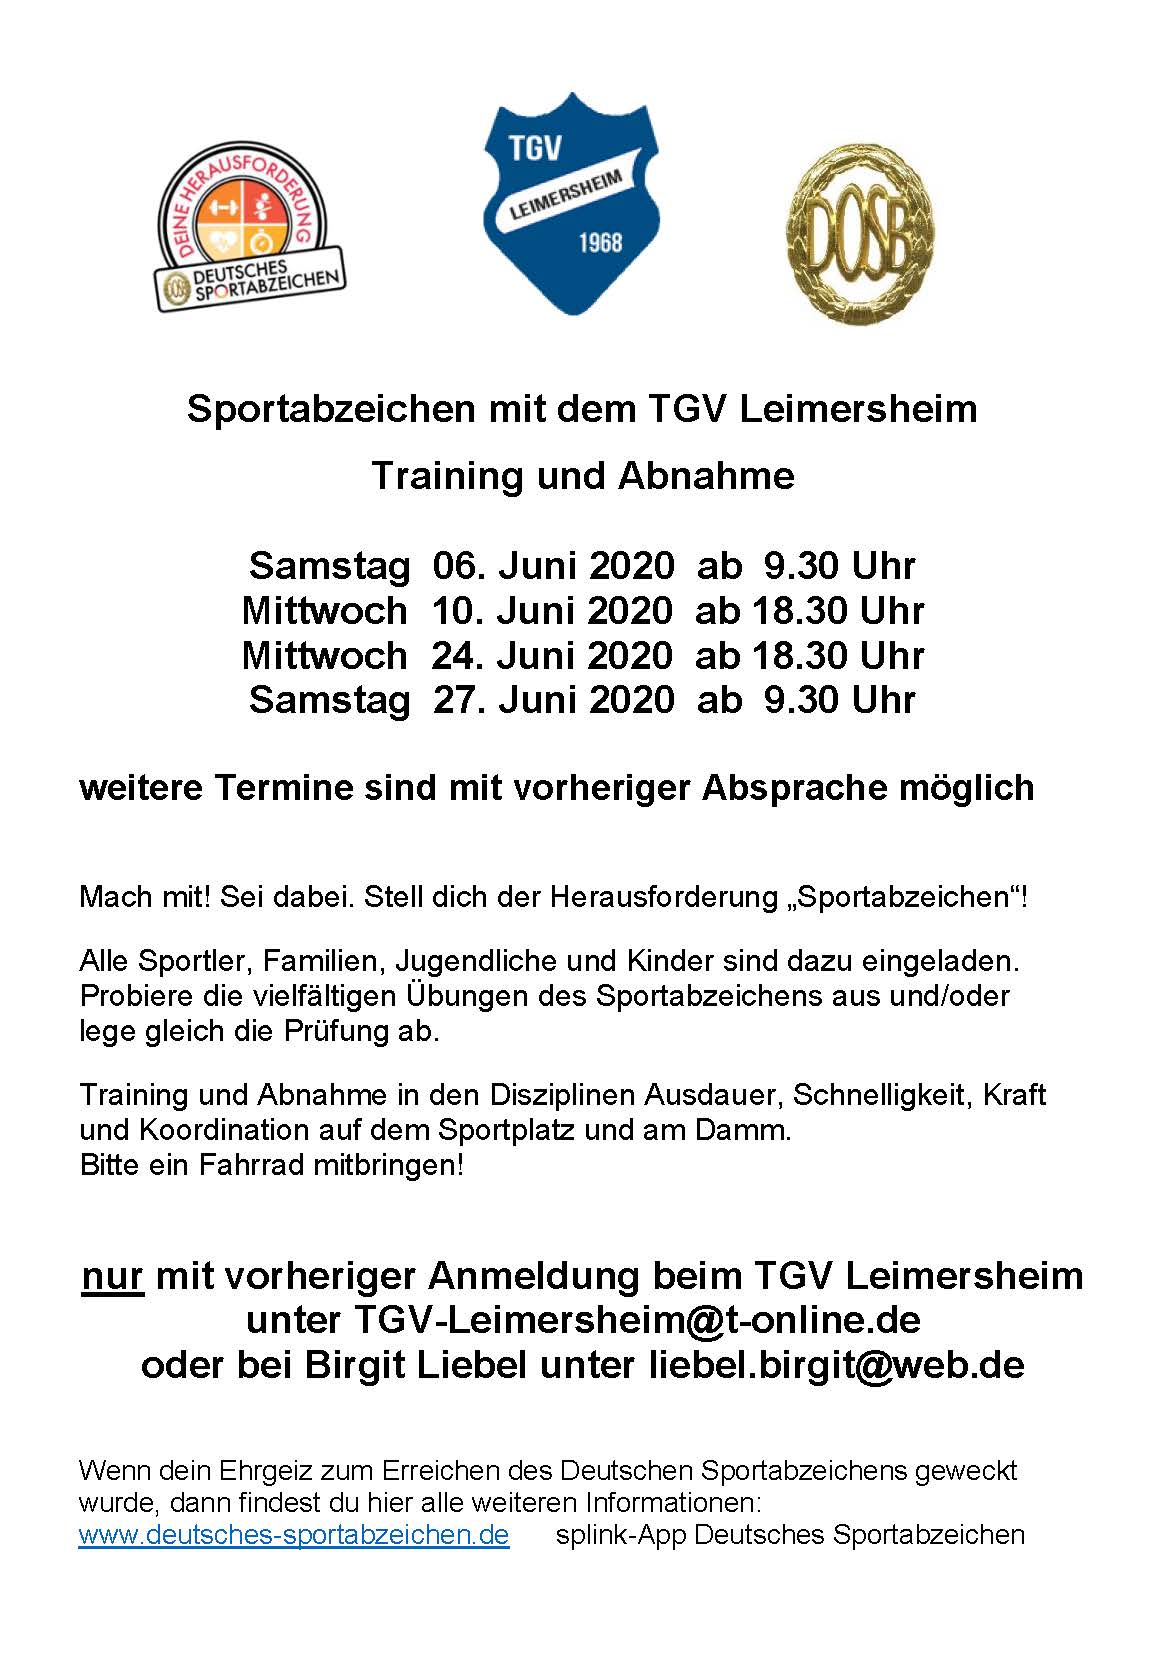 Sportabzeichen+2020+Vorlage+Flyer+06_2020